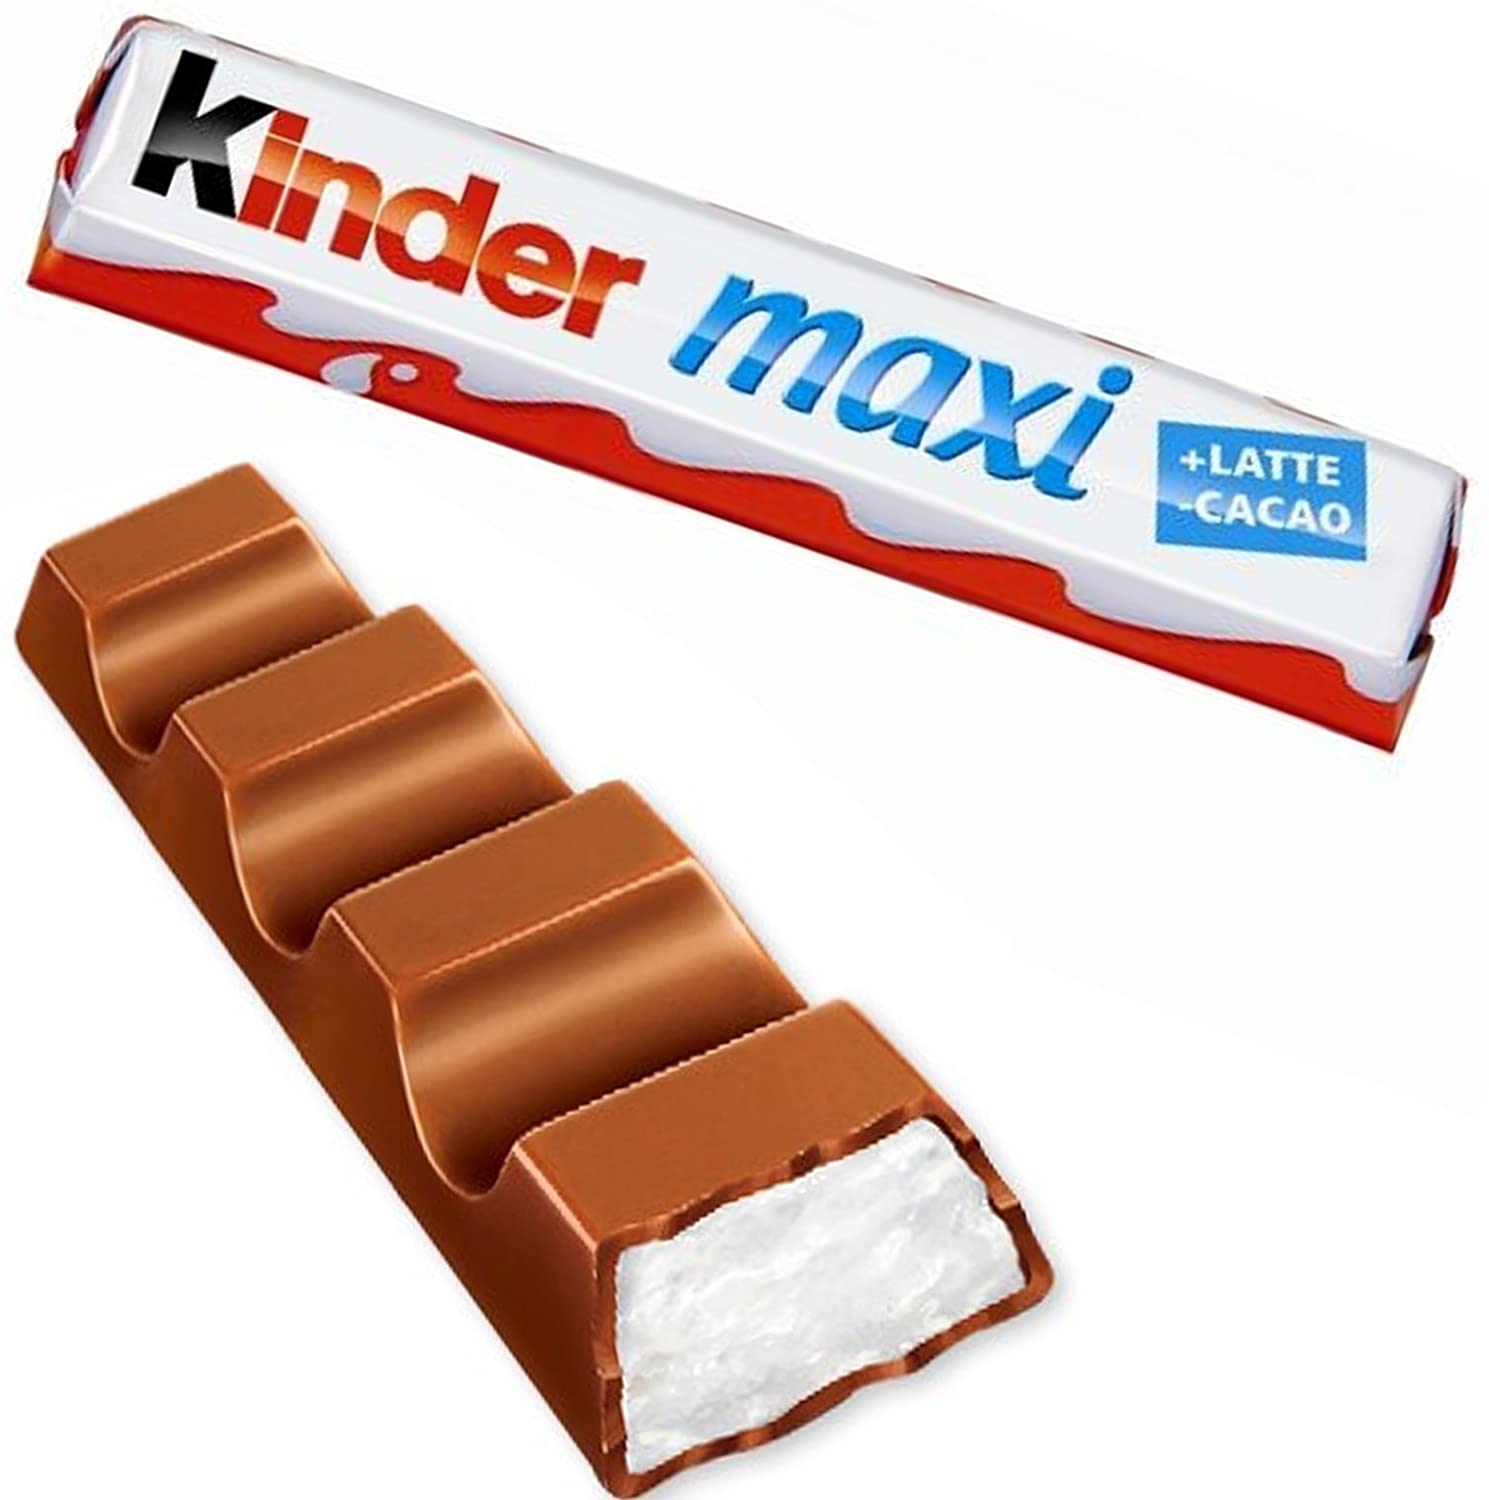 Buy Kinder Maxi Ferrero online